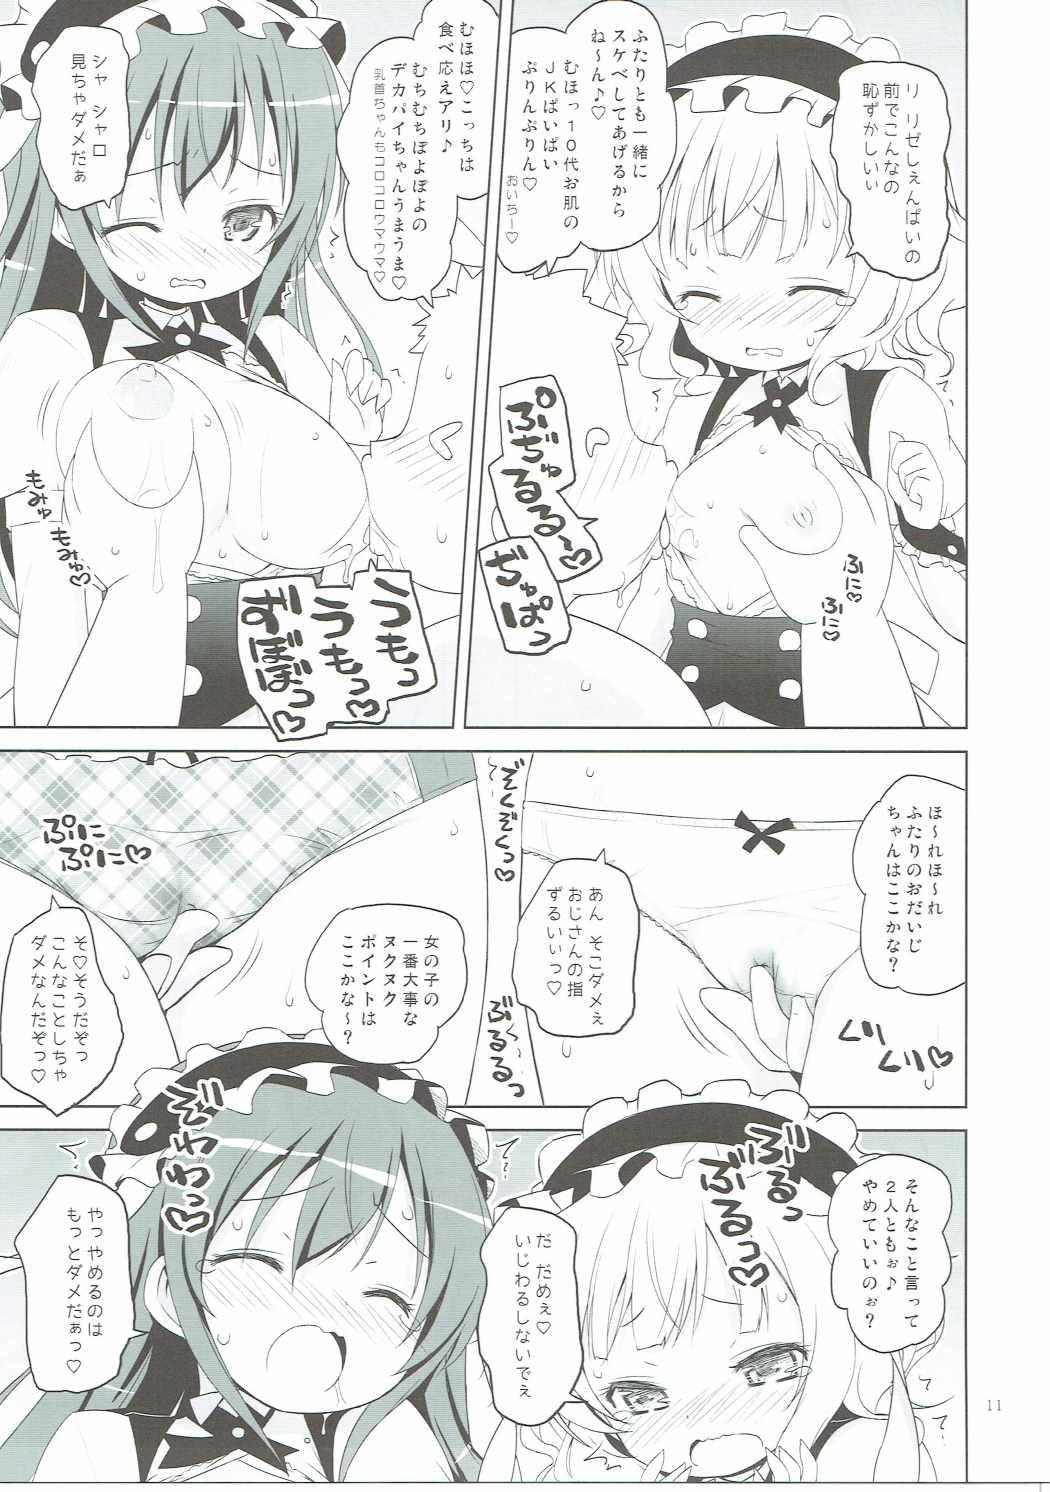 Babysitter Sharo-chan VS Caffeine Otoko - Gochuumon wa usagi desu ka Titten - Page 10